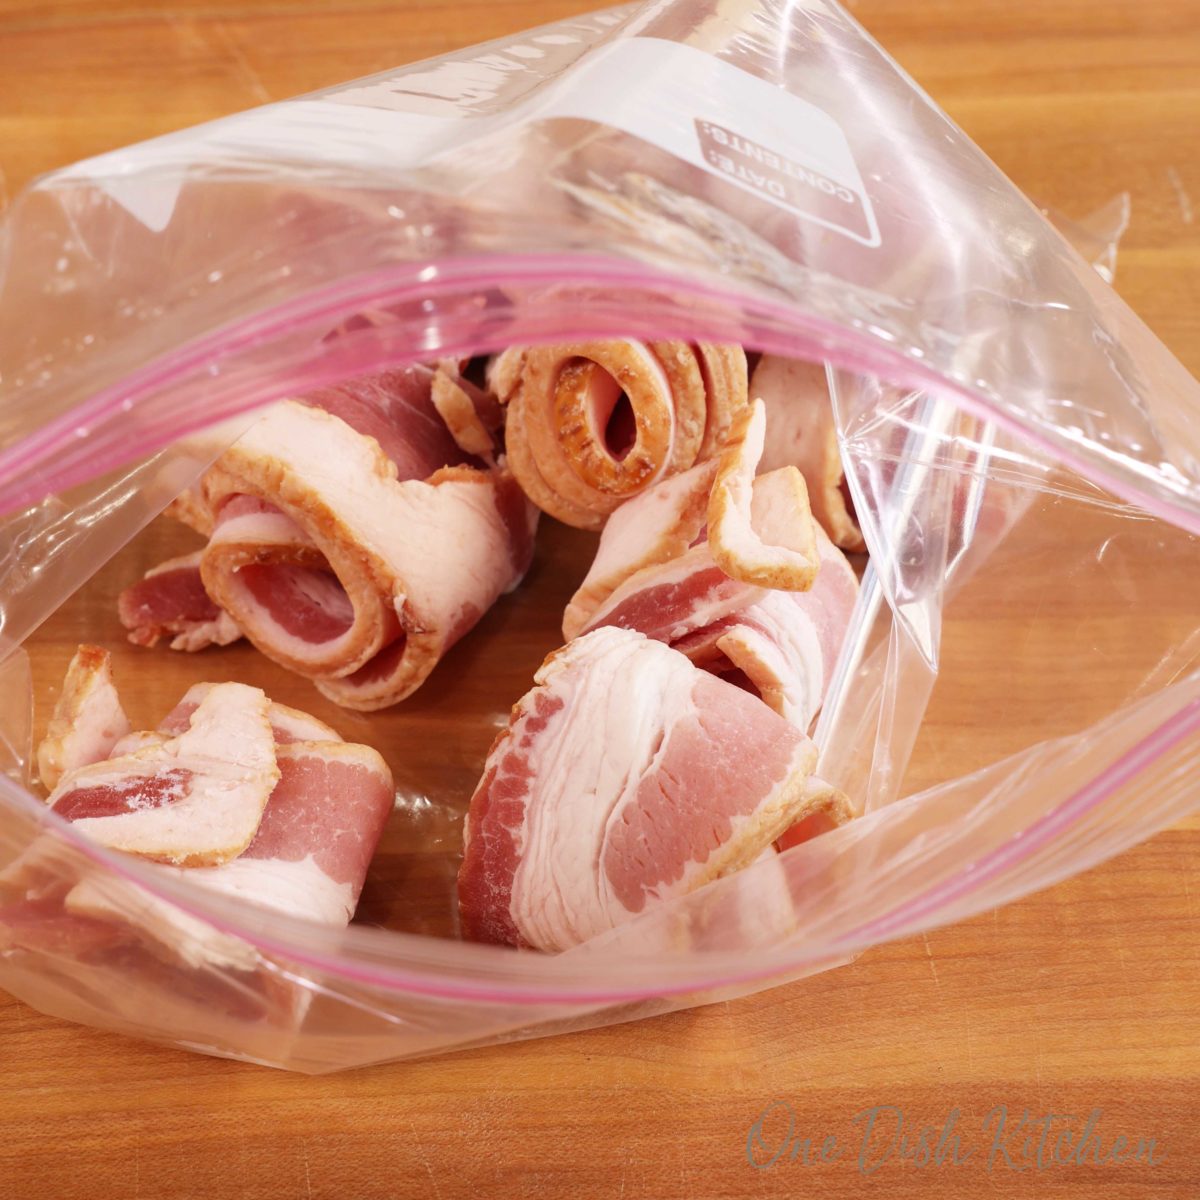 frozen bacon spirals in a ziplock bag